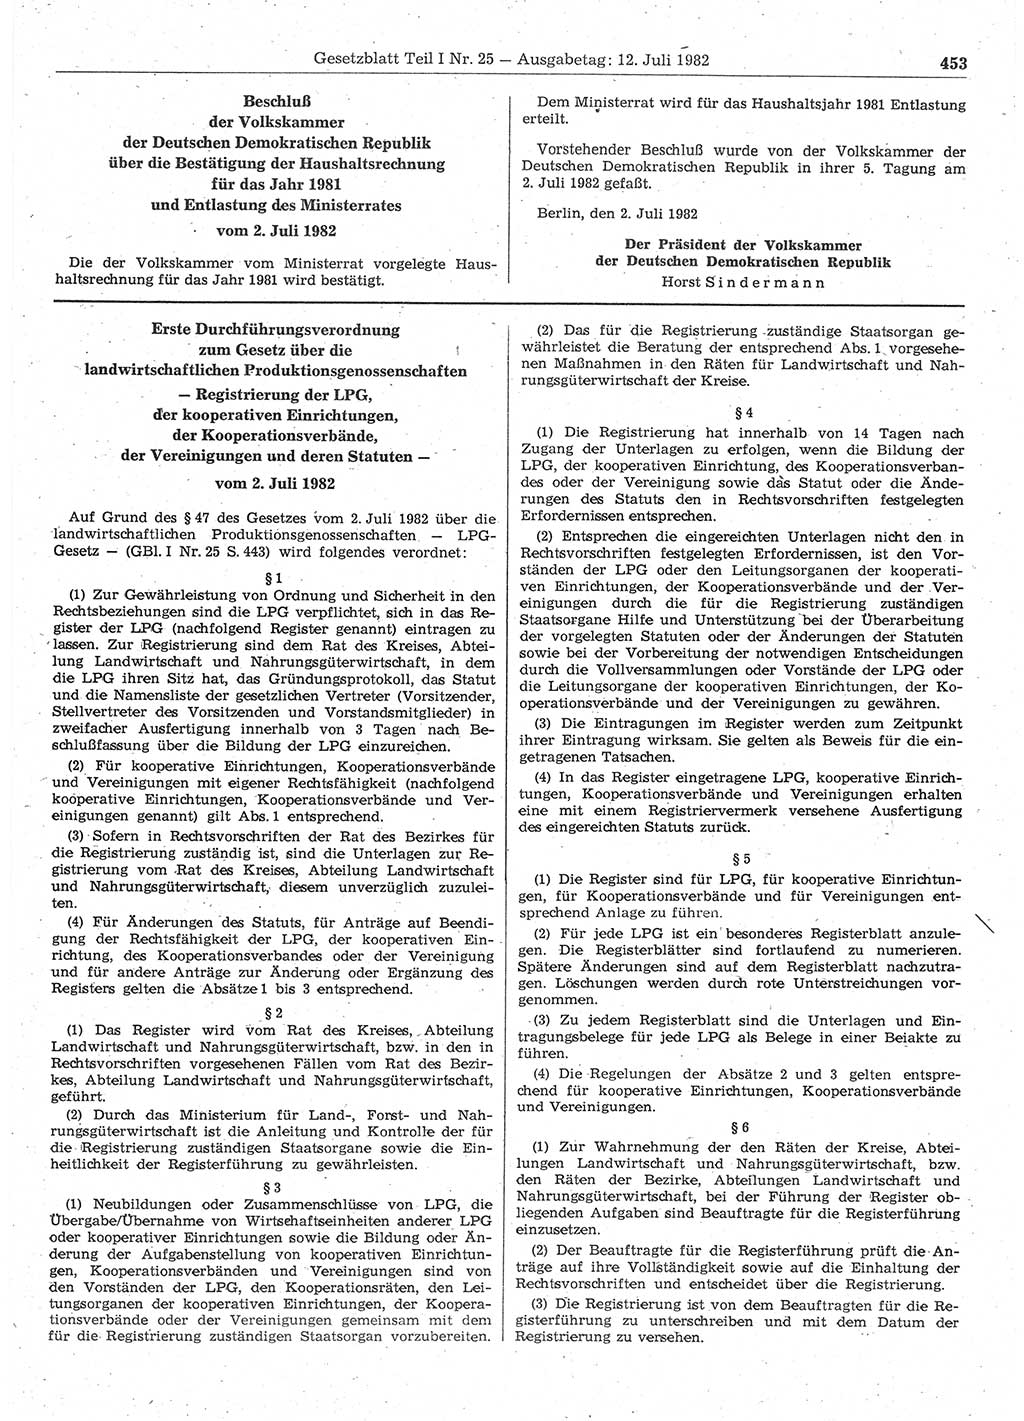 Gesetzblatt (GBl.) der Deutschen Demokratischen Republik (DDR) Teil Ⅰ 1982, Seite 453 (GBl. DDR Ⅰ 1982, S. 453)